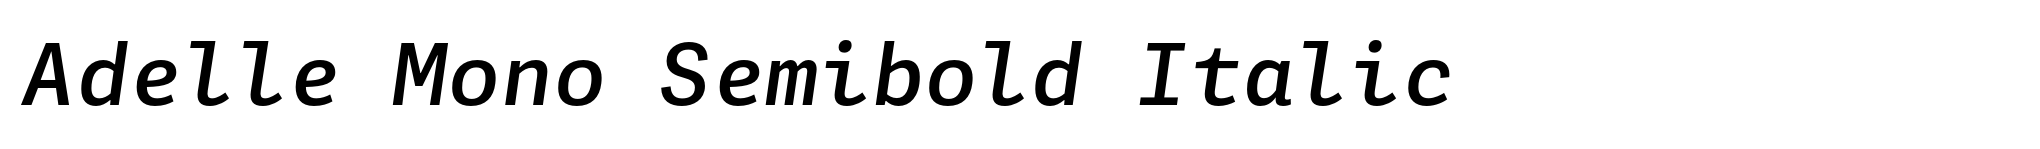 Adelle Mono Semibold Italic image